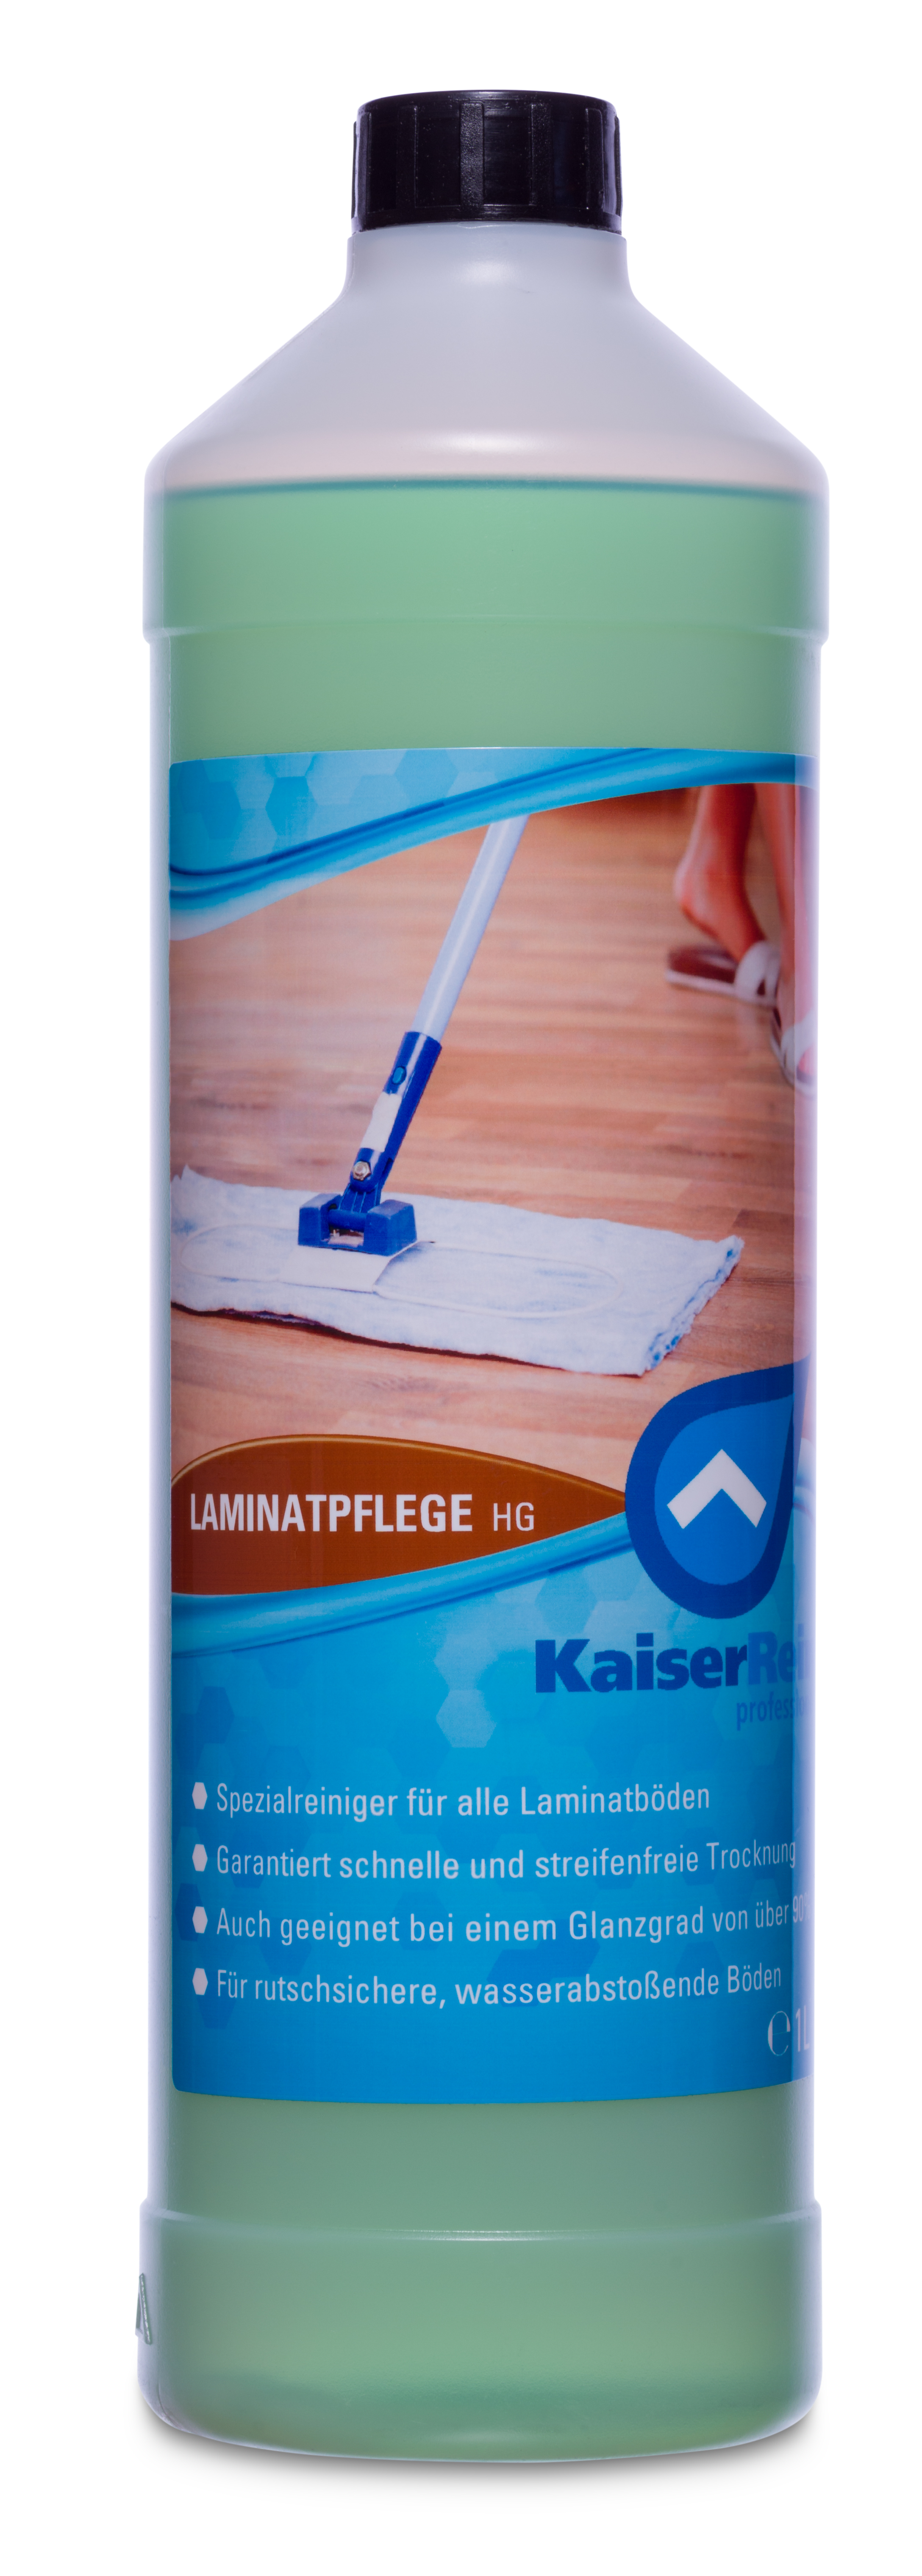 Laminatreiniger Laminatpflege HG 1L schont und pﬂegt den Boden in einem Arbeitsgang